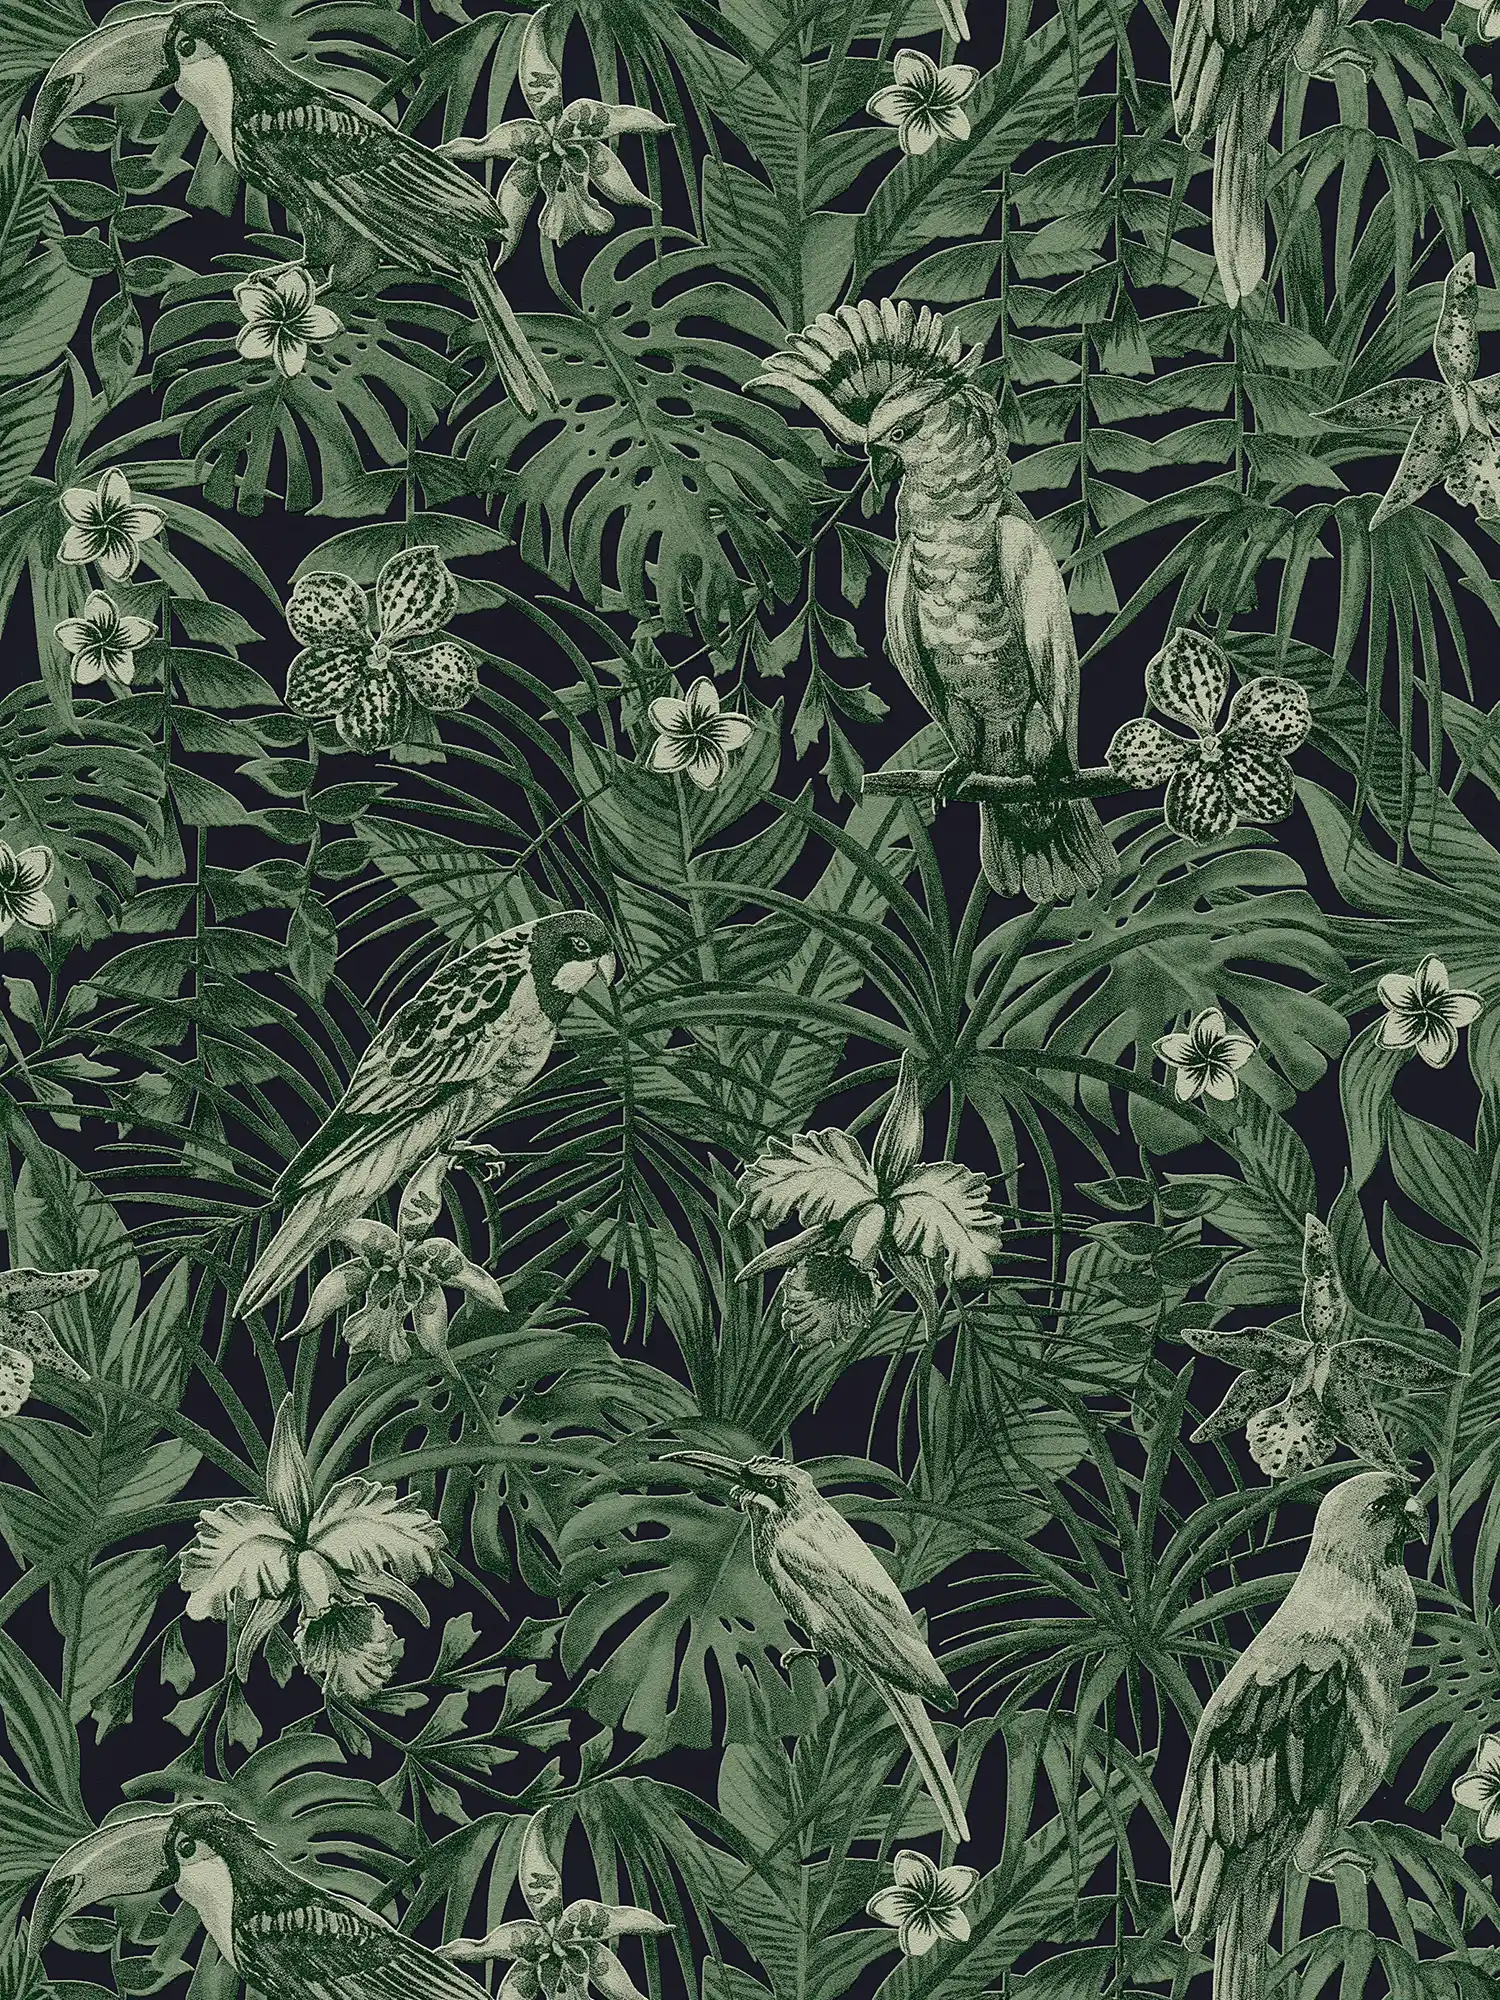 Tapete tropische Vögel & exotische Blüten – Grün, Schwarz
